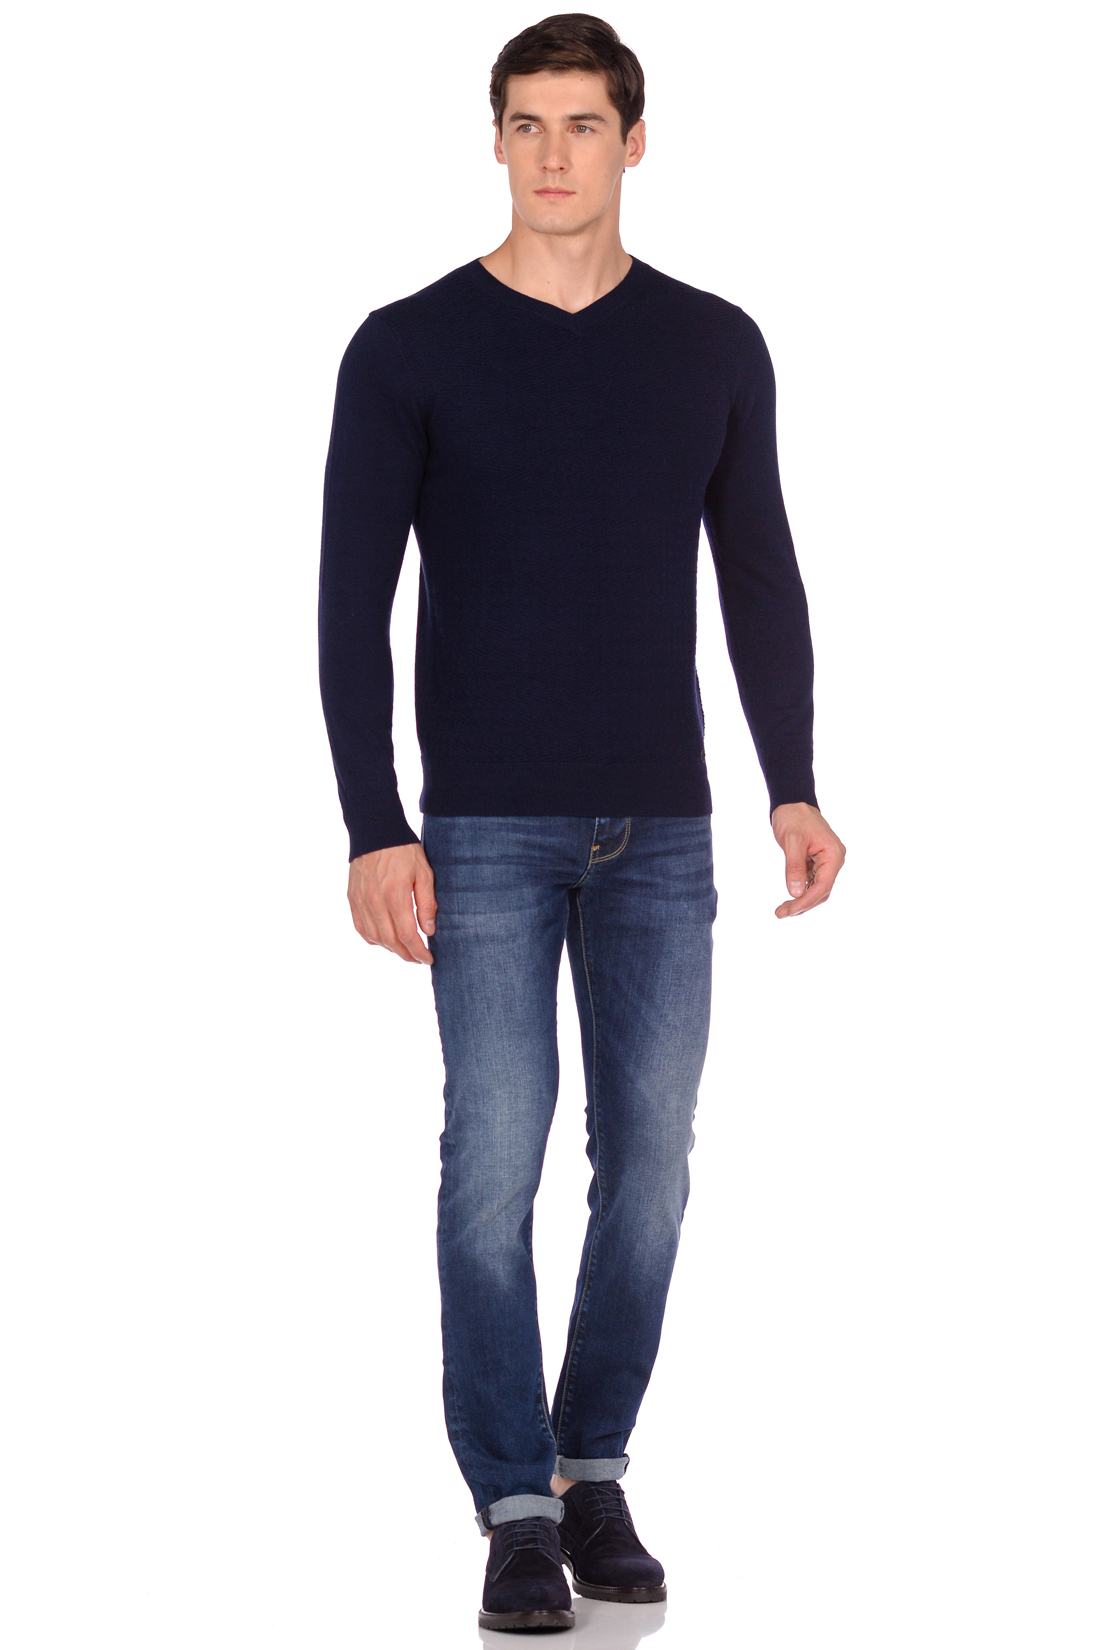 Пуловер с рельефным узором (арт. baon B638502), размер S, цвет deep navy melange#синий Пуловер с рельефным узором (арт. baon B638502) - фото 3